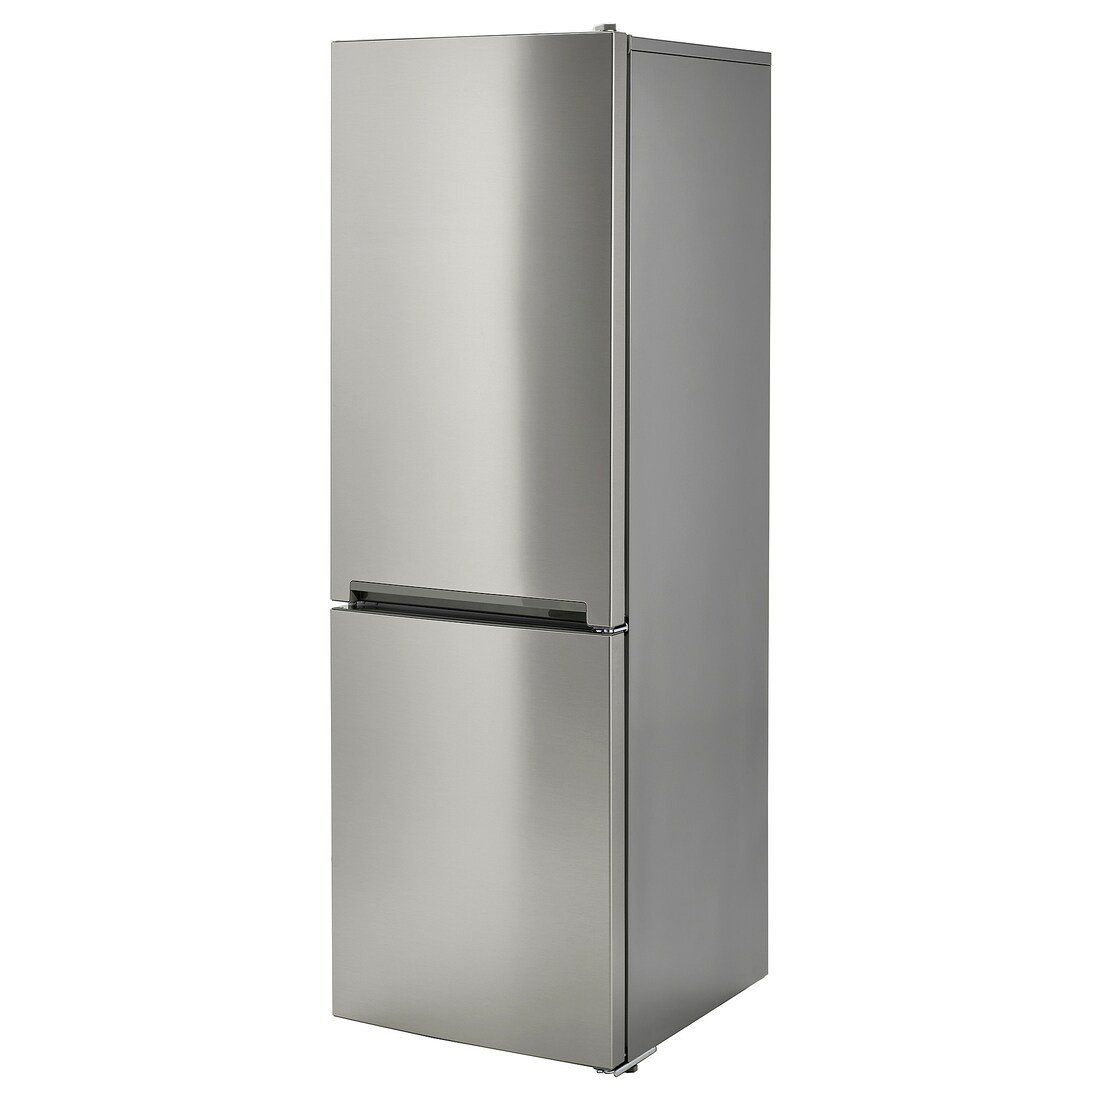 VINDÅS Холодильник / морозильник, IKEA 300 окремостоячий / сталь, 223/120 л